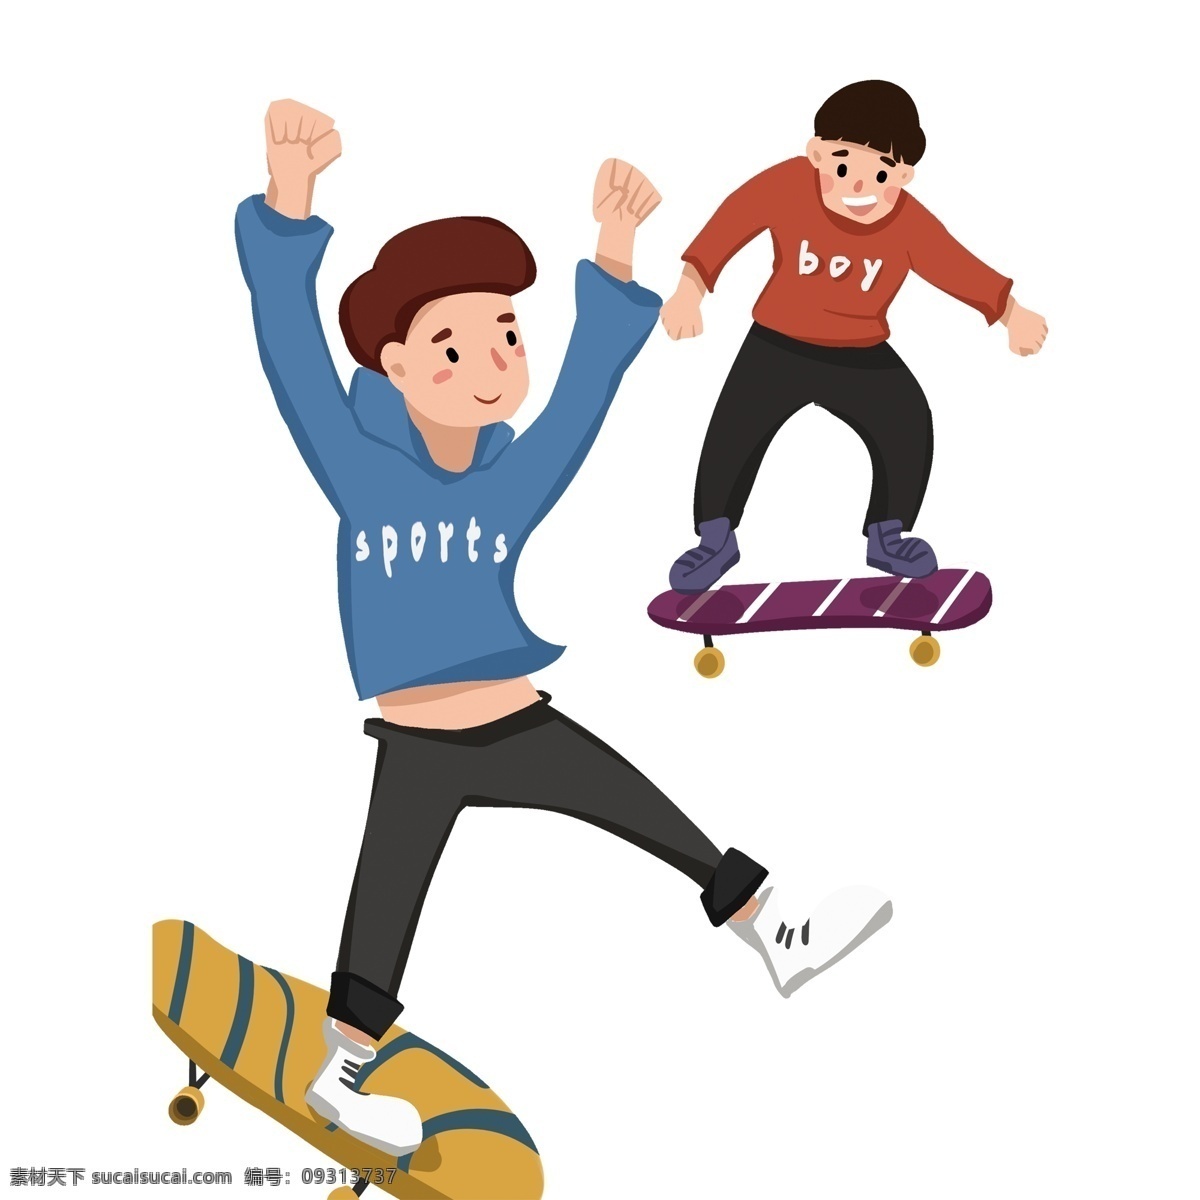 二 男孩 玩 划 板 免 抠 图 两人男孩 划板男孩 蓝色衣服 动漫人物 卡通动漫 运动中的男孩 划板 游戏玩具 小